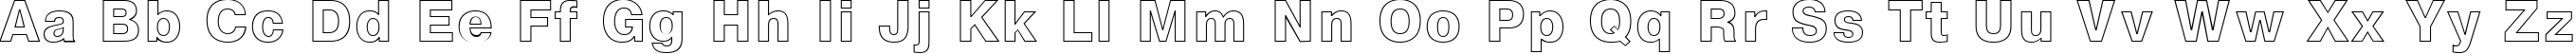 Пример написания английского алфавита шрифтом NTOutline